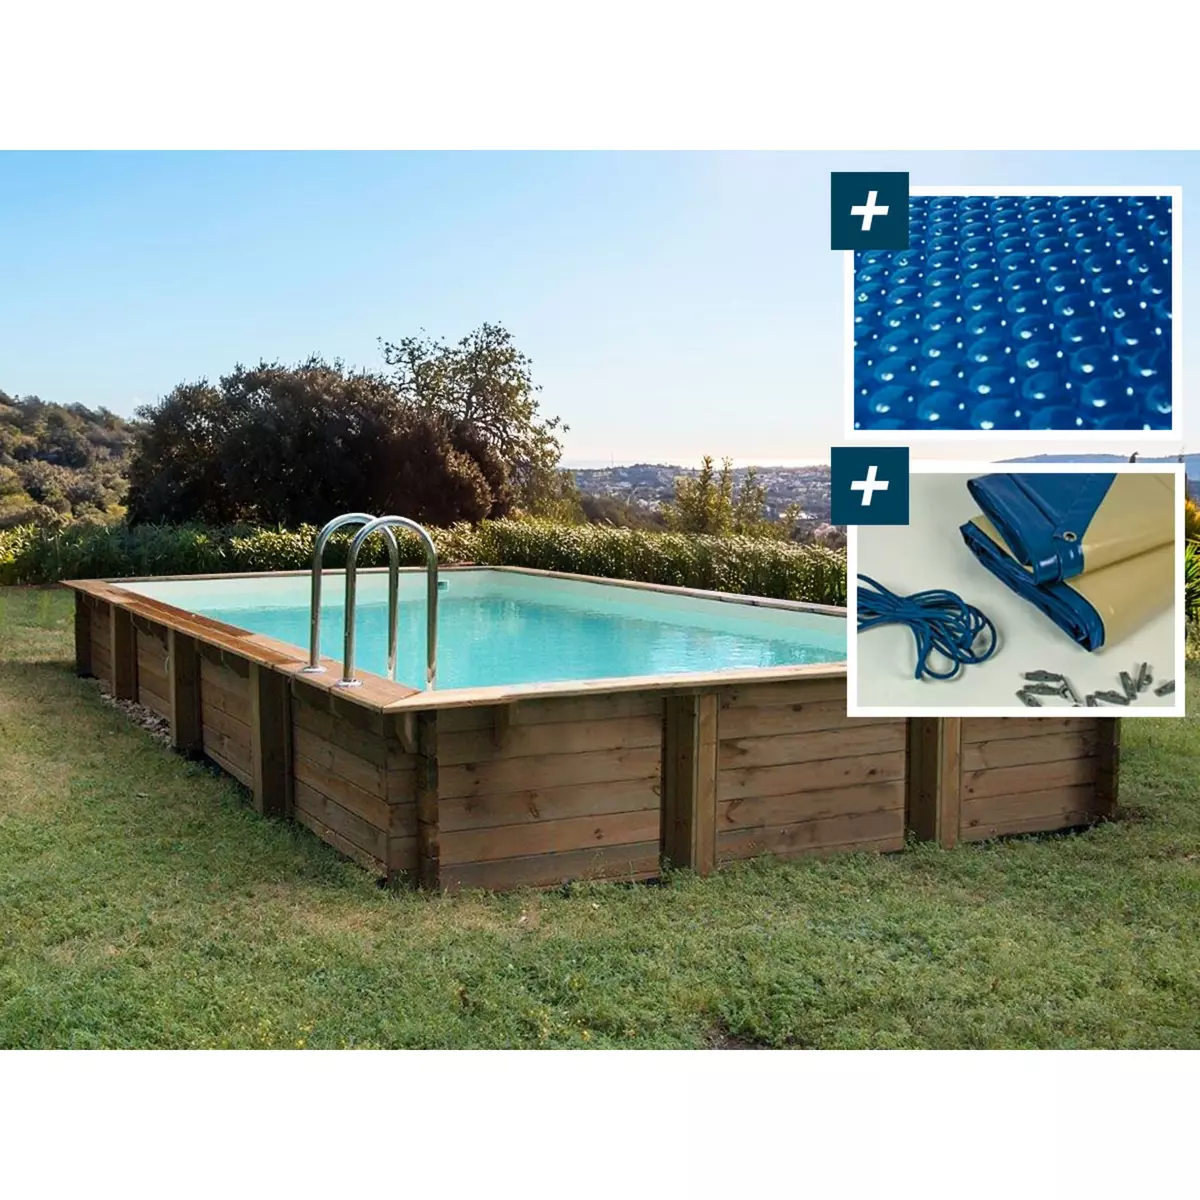 Habitat et Jardin Piscine bois en kit rectangle   Murano   - 12.20 x 6.20 x 1.44 m - Bâche à bulles  400 µ - Bâche hiver  280 g/m²